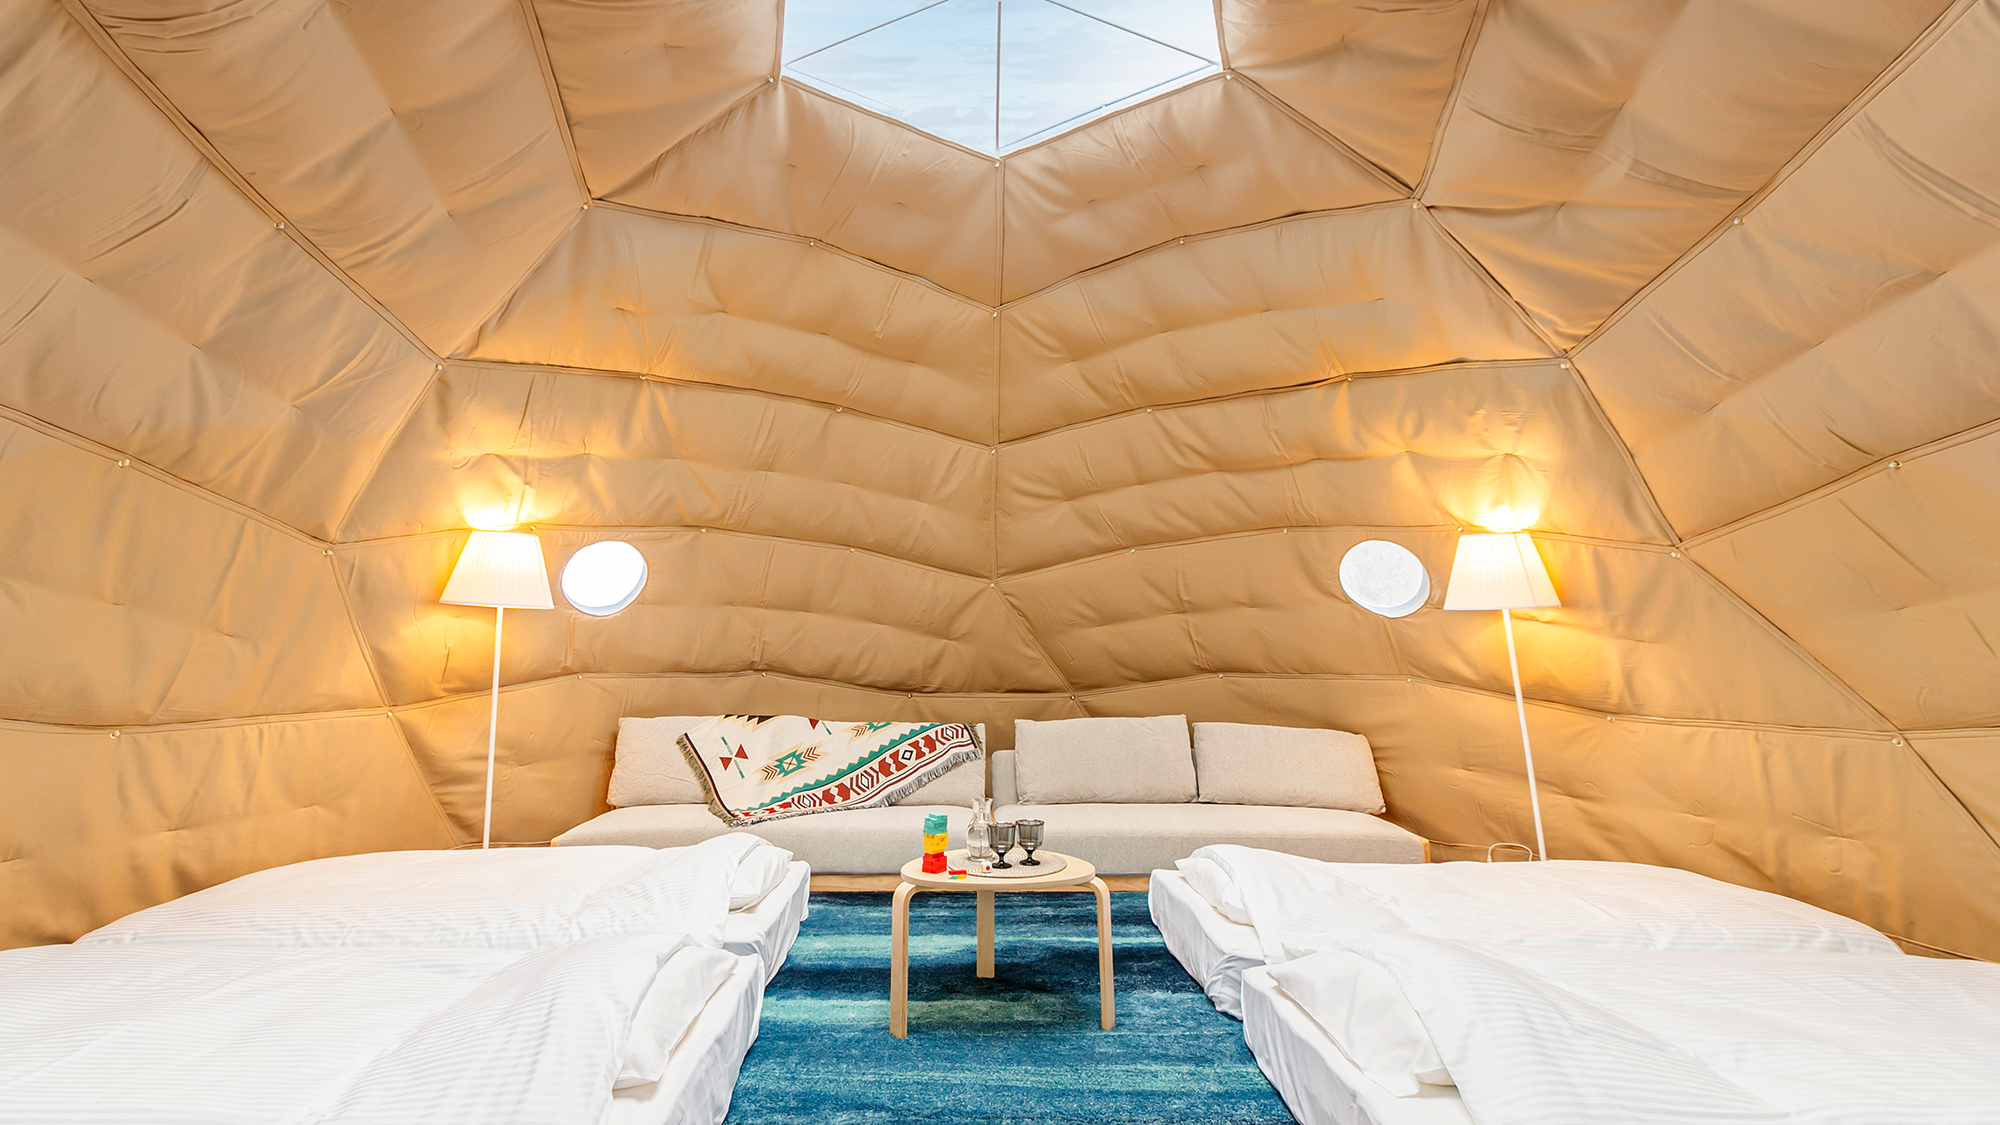 【ドーム型テント】 高い天井、広い空間。外界から隔てられた「秘密基地」のような内装に思わずワクワク♪